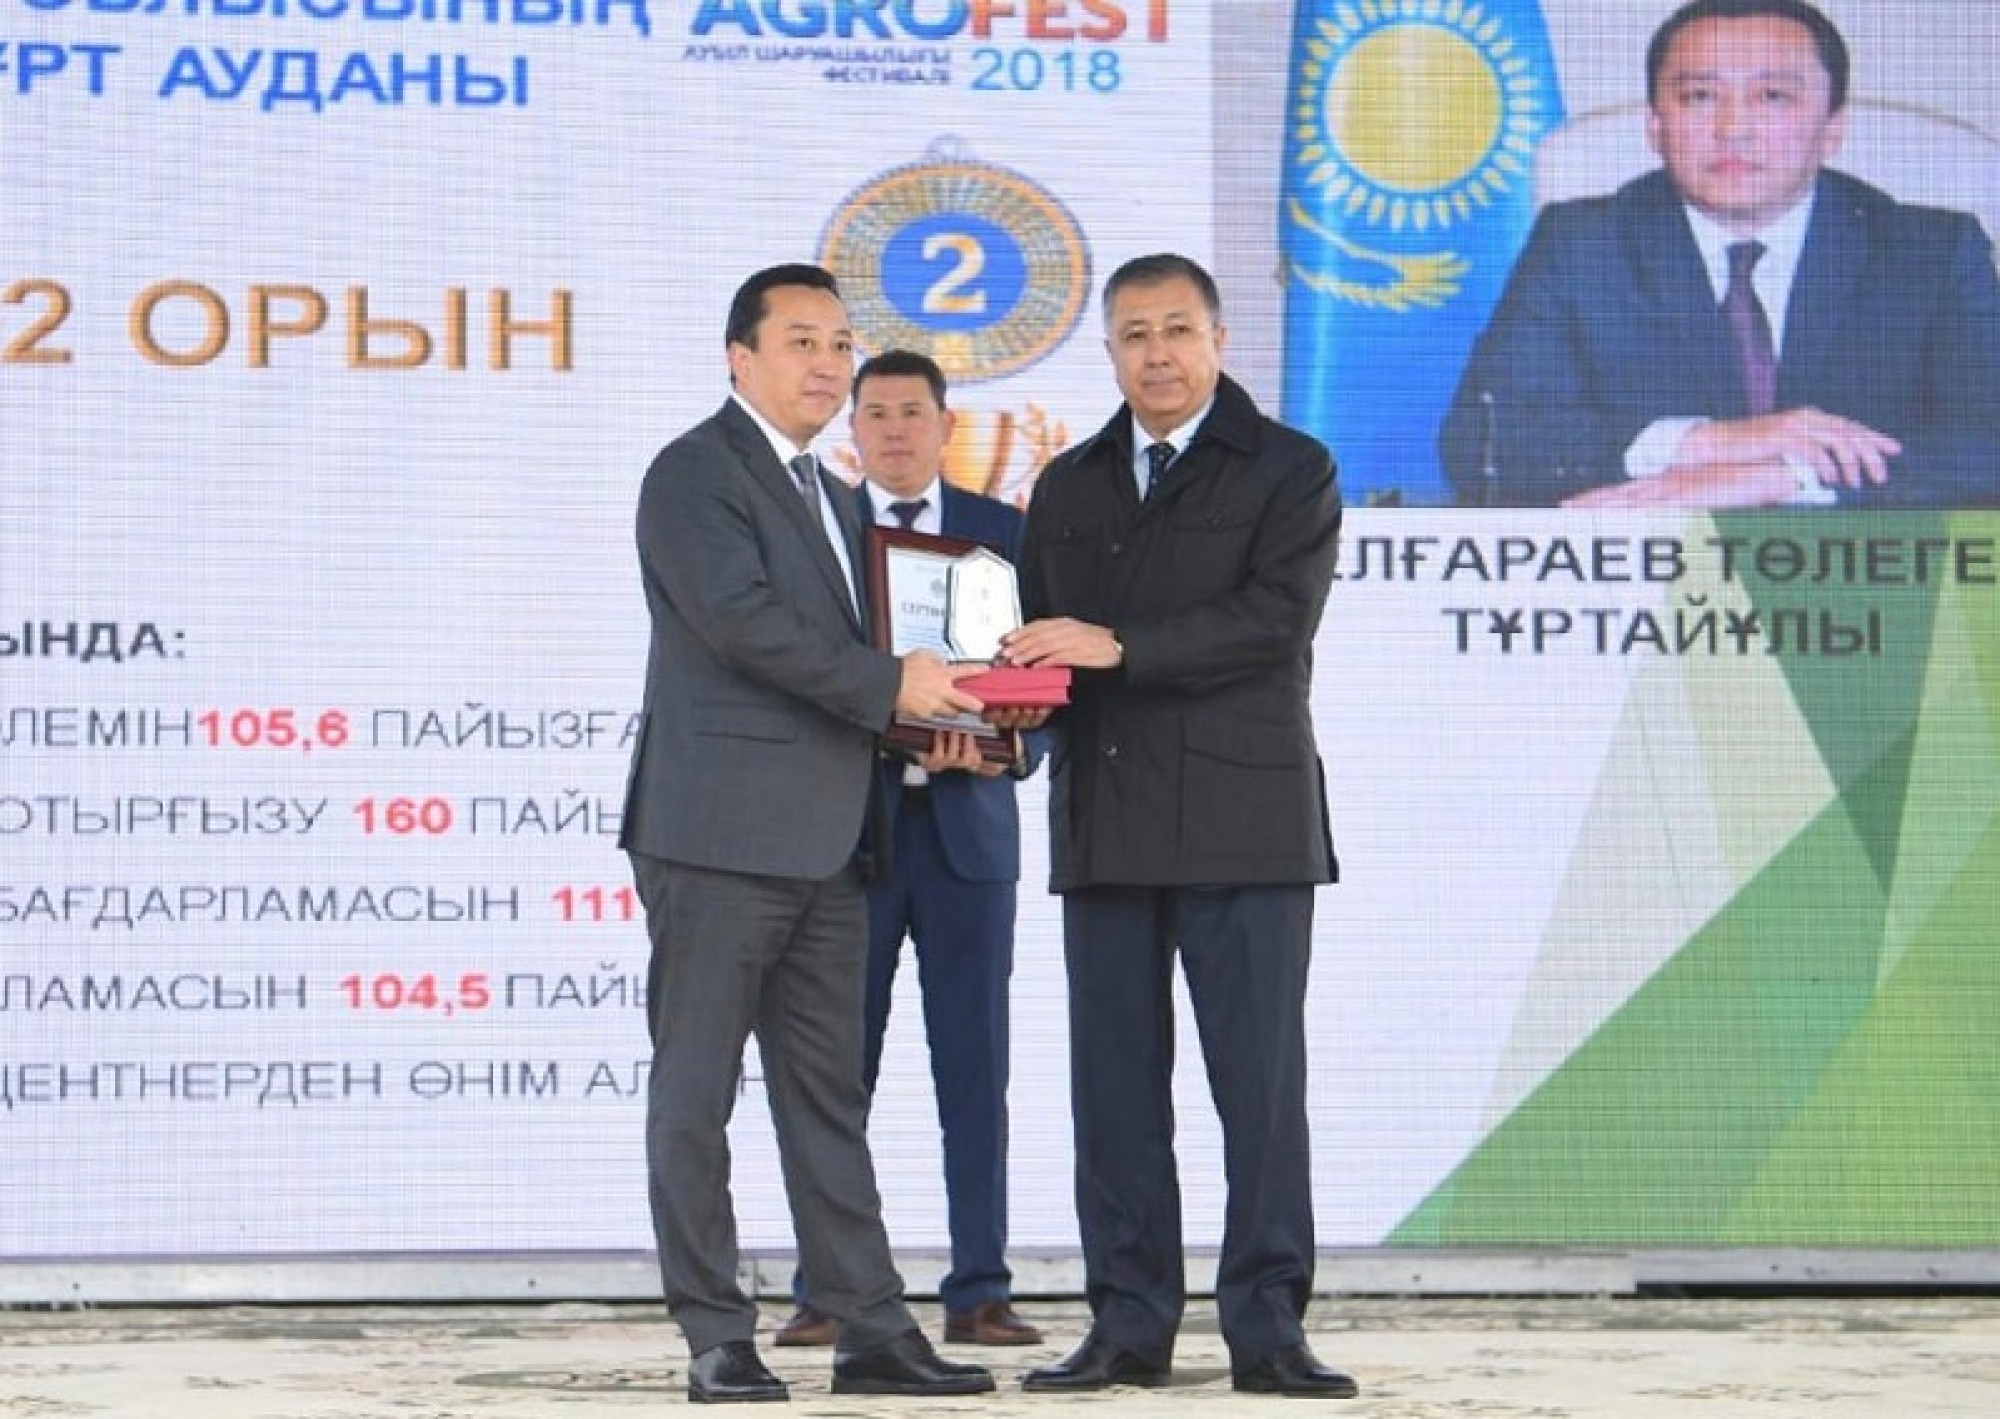 Turkestan hosted the festival «Agrofest-2018»